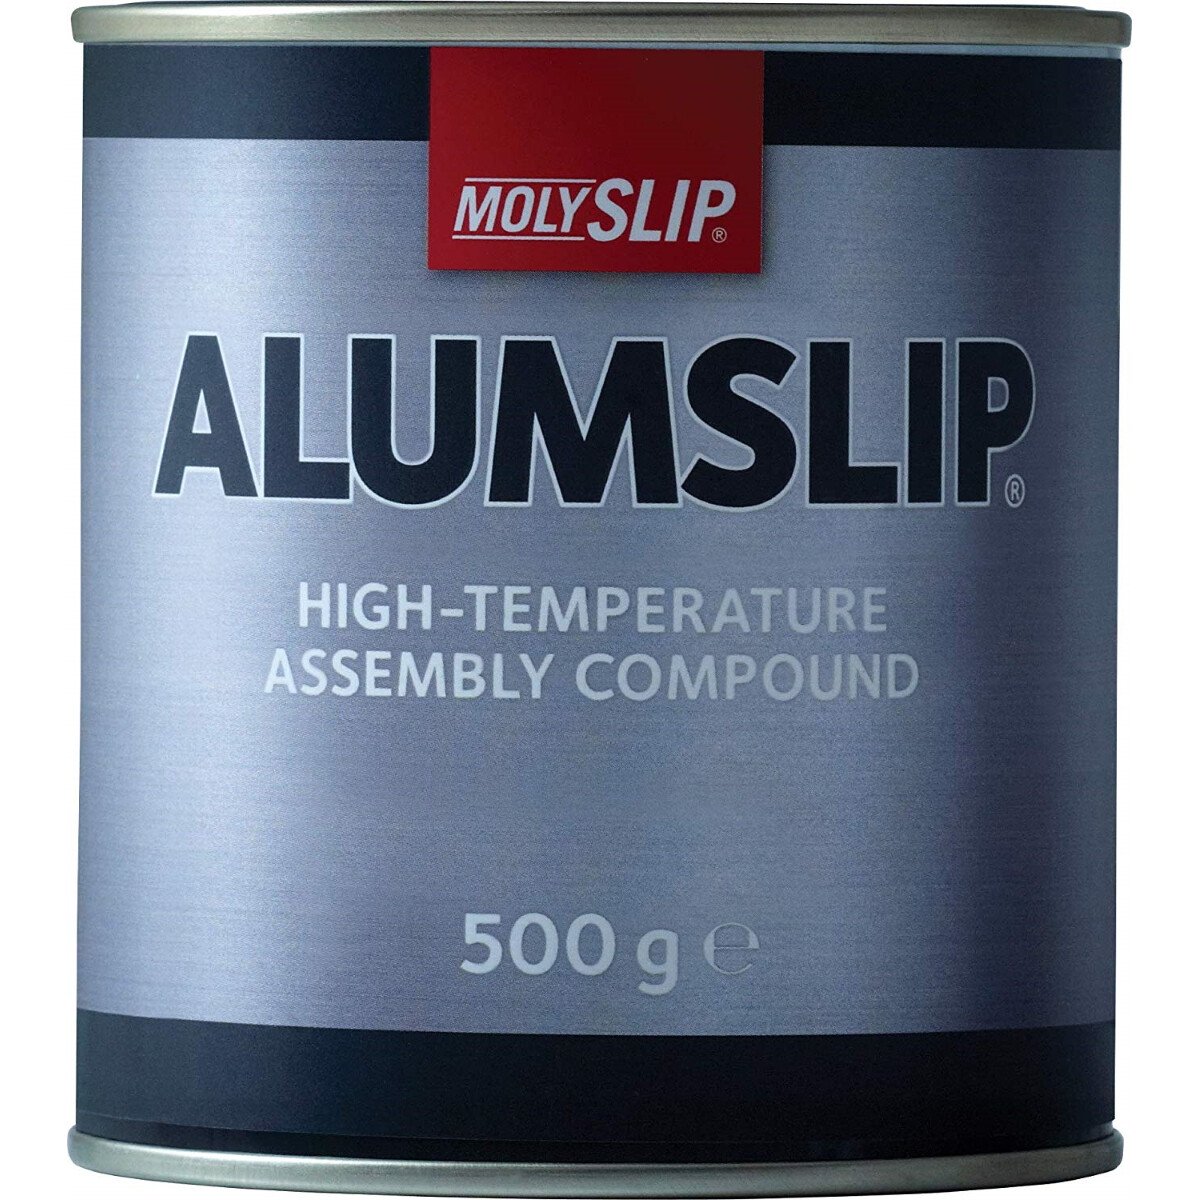 Molyslip M111005 Alumslip Anti-Seize Compound 500g Tin